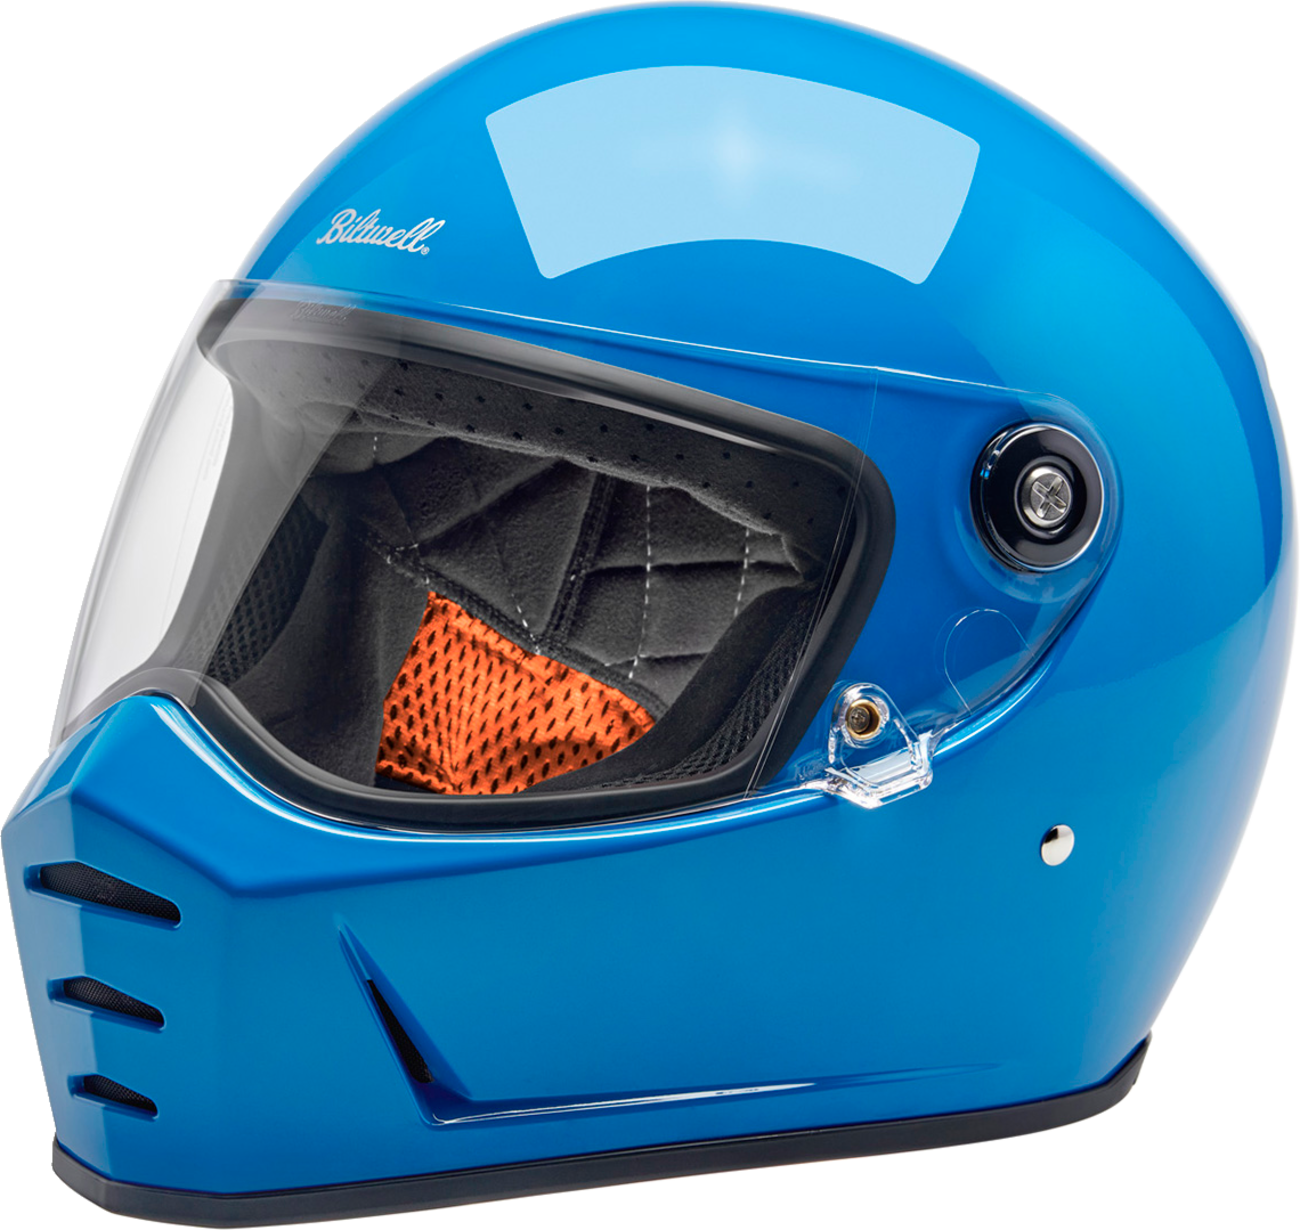 BILTWELL Lane Splitter Helmet - Gloss Tahoe Blue - Large 1004-129-504